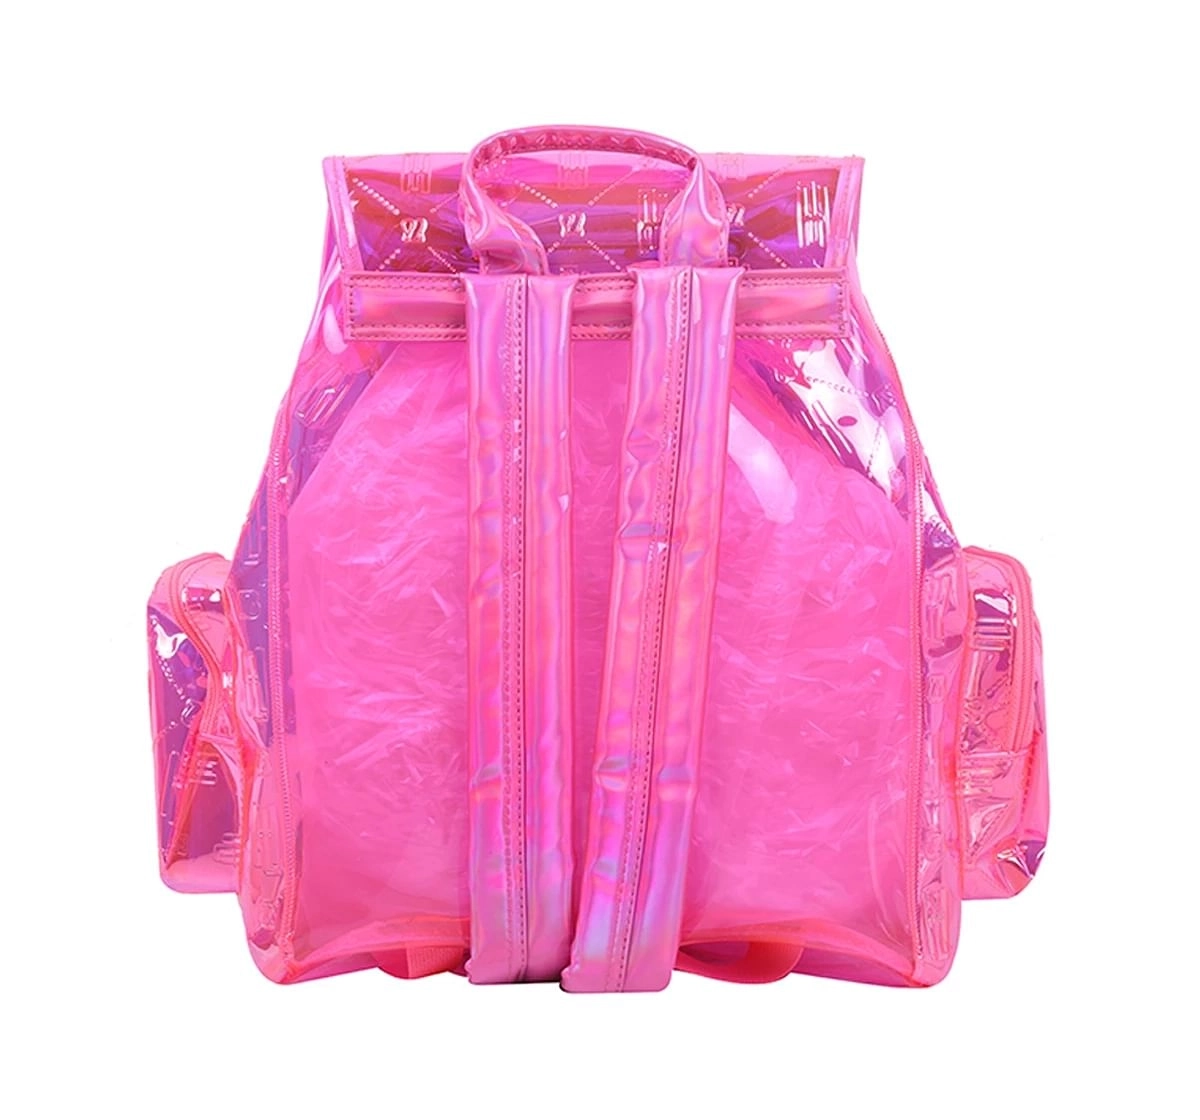 Hamster London Raver Backpack Pink